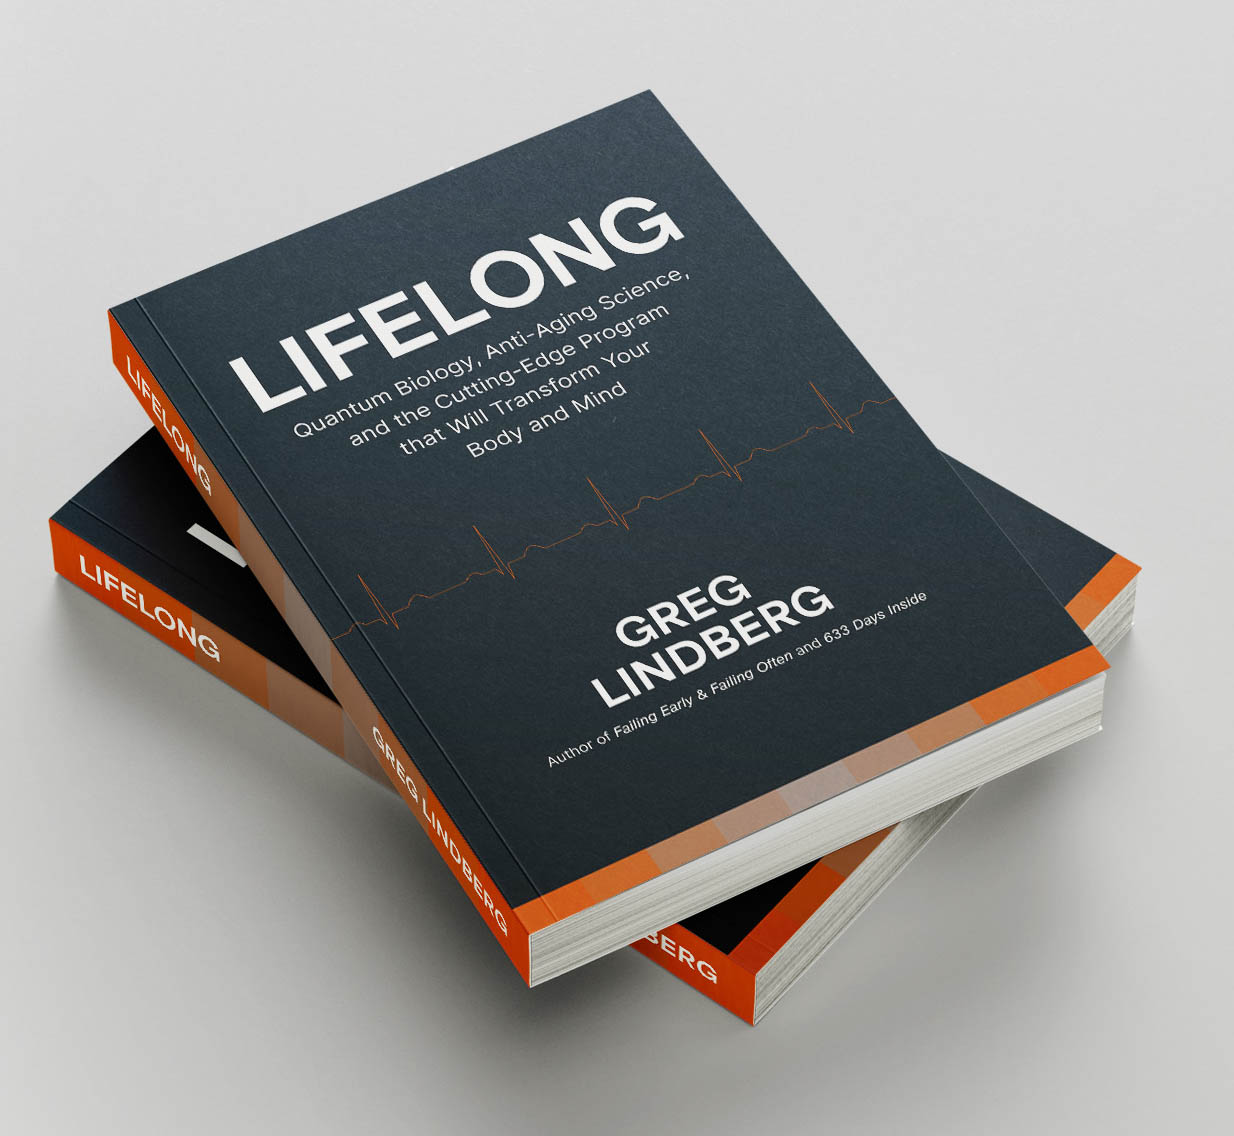 Greg Lindberg Book - Lifelong